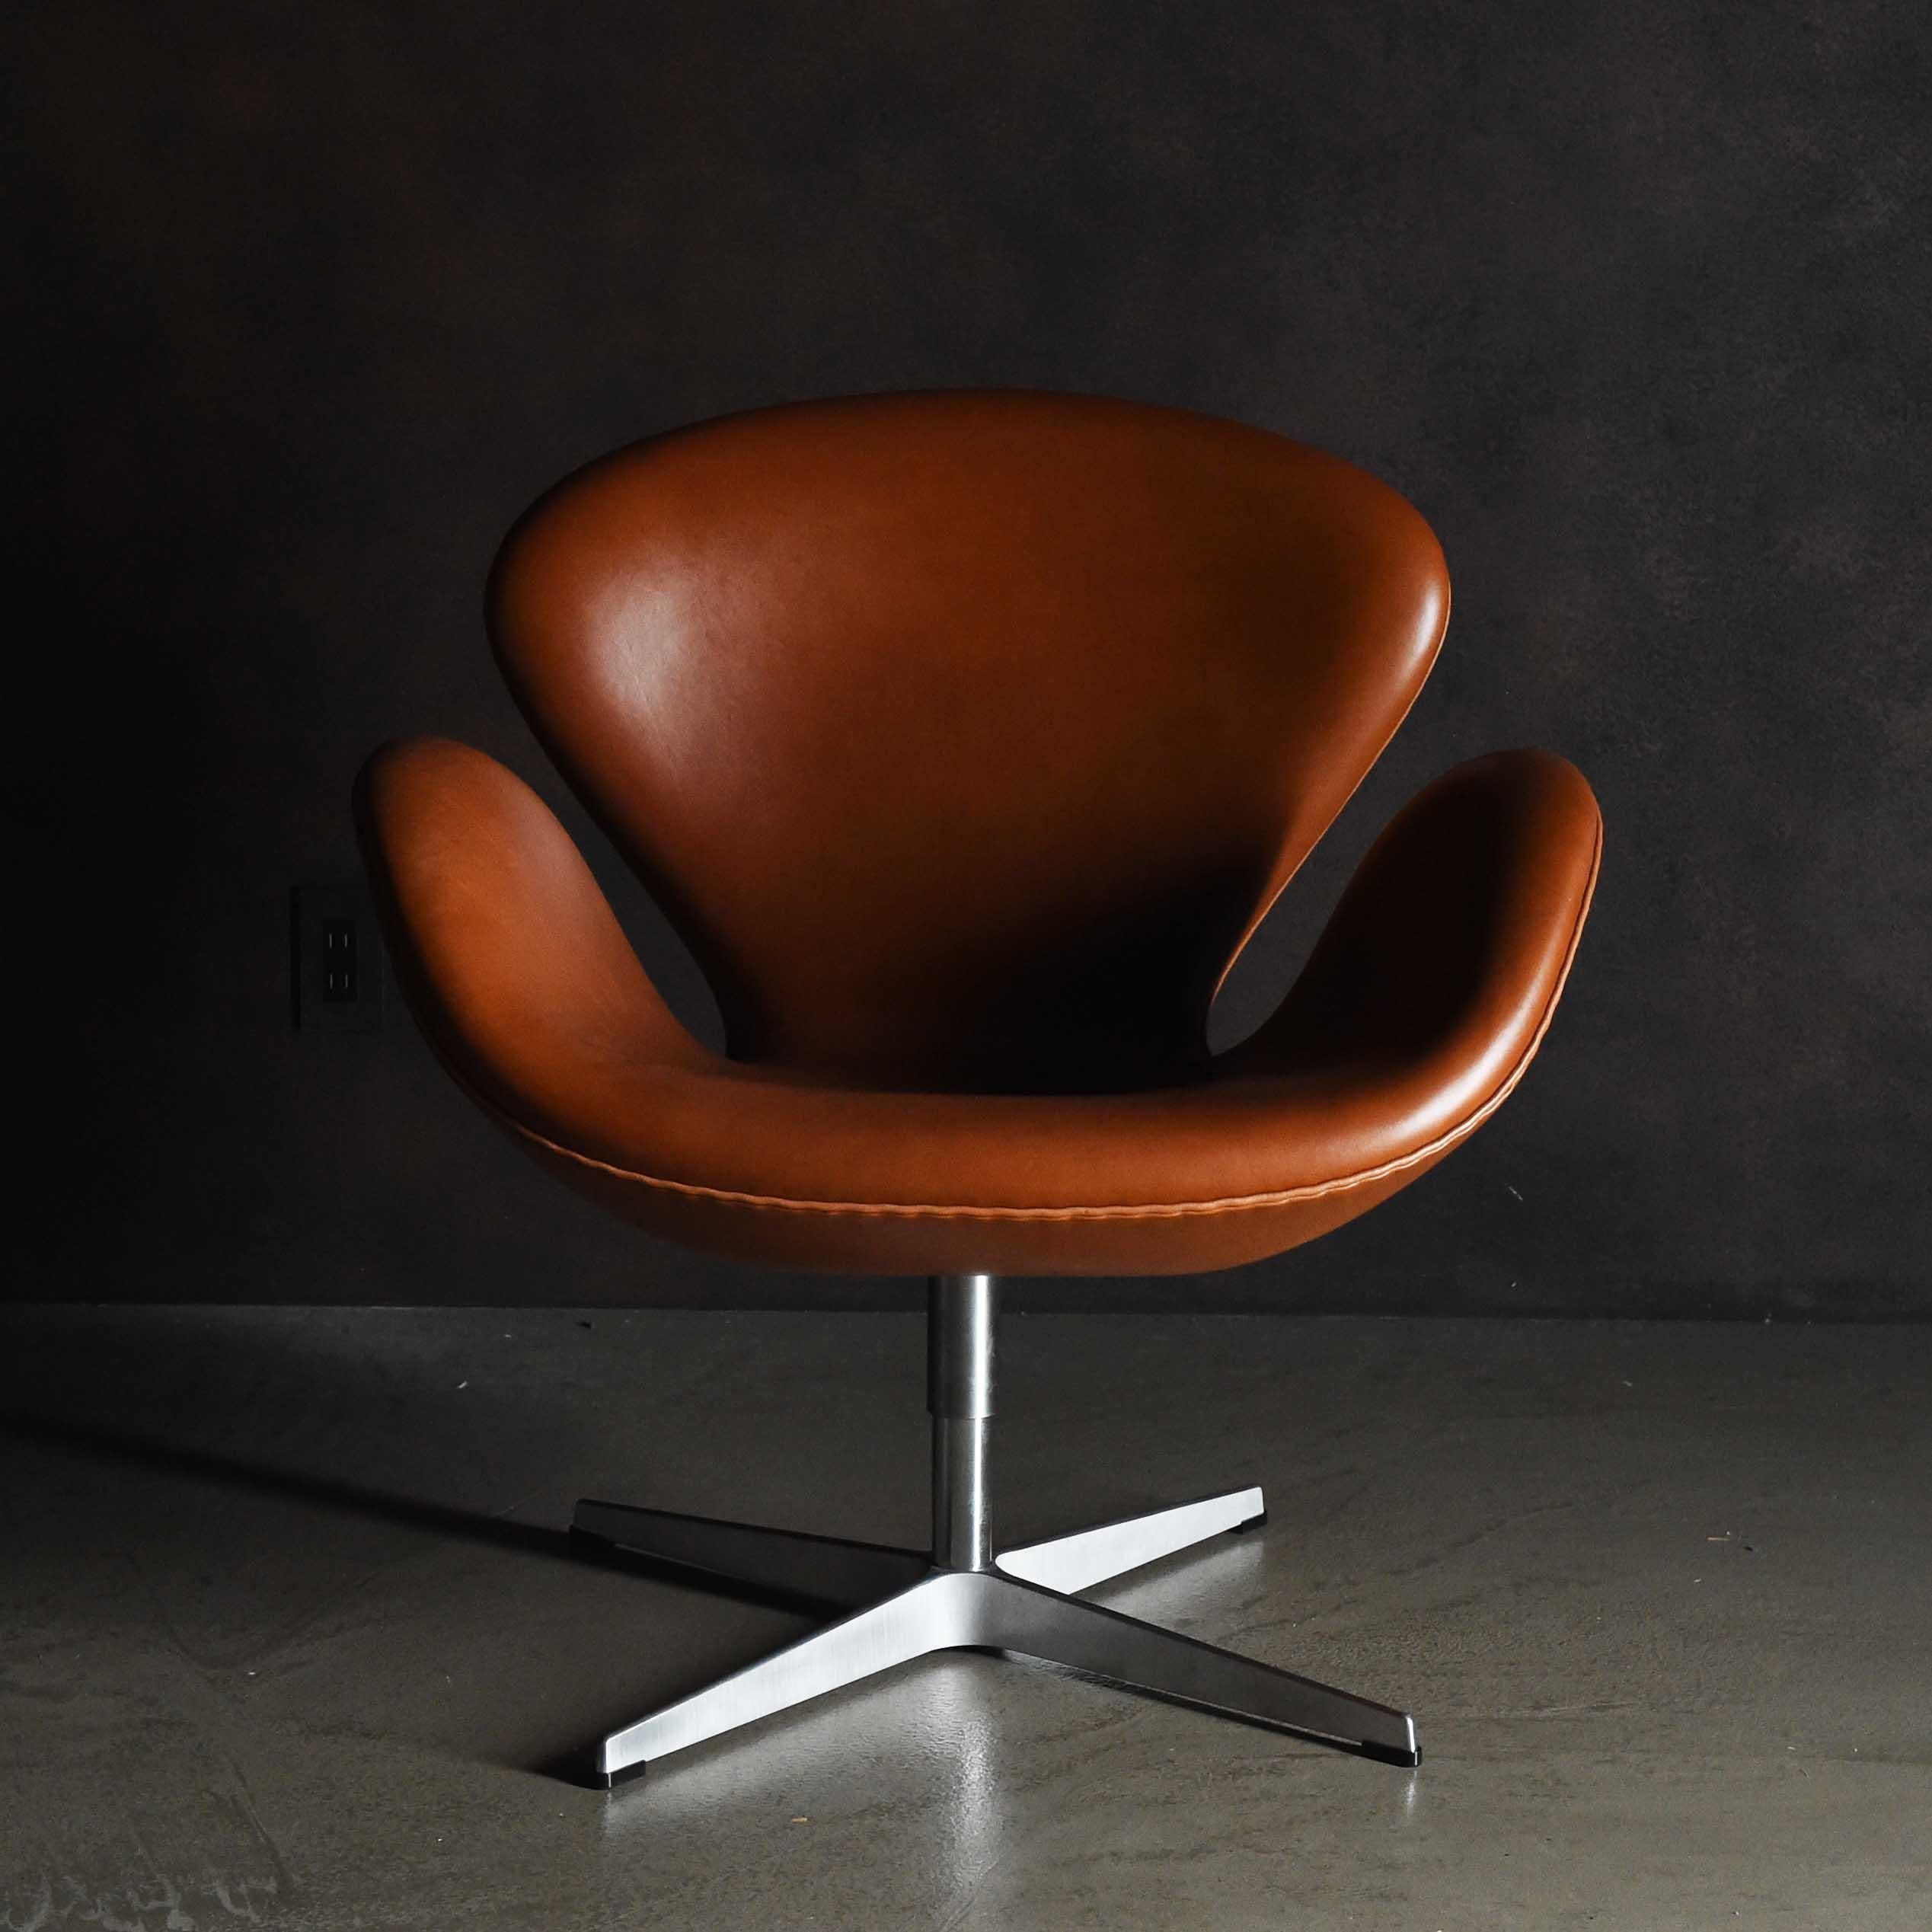 La Swan Chair est une chaise longue conçue par Arne Jacobsen en 1958 pour le hall et les salons de l'hôtel SAS Royal à Copenhague. La forme de la chaise, composée uniquement de courbes, est simple et distinctive, donnant au spectateur une impression